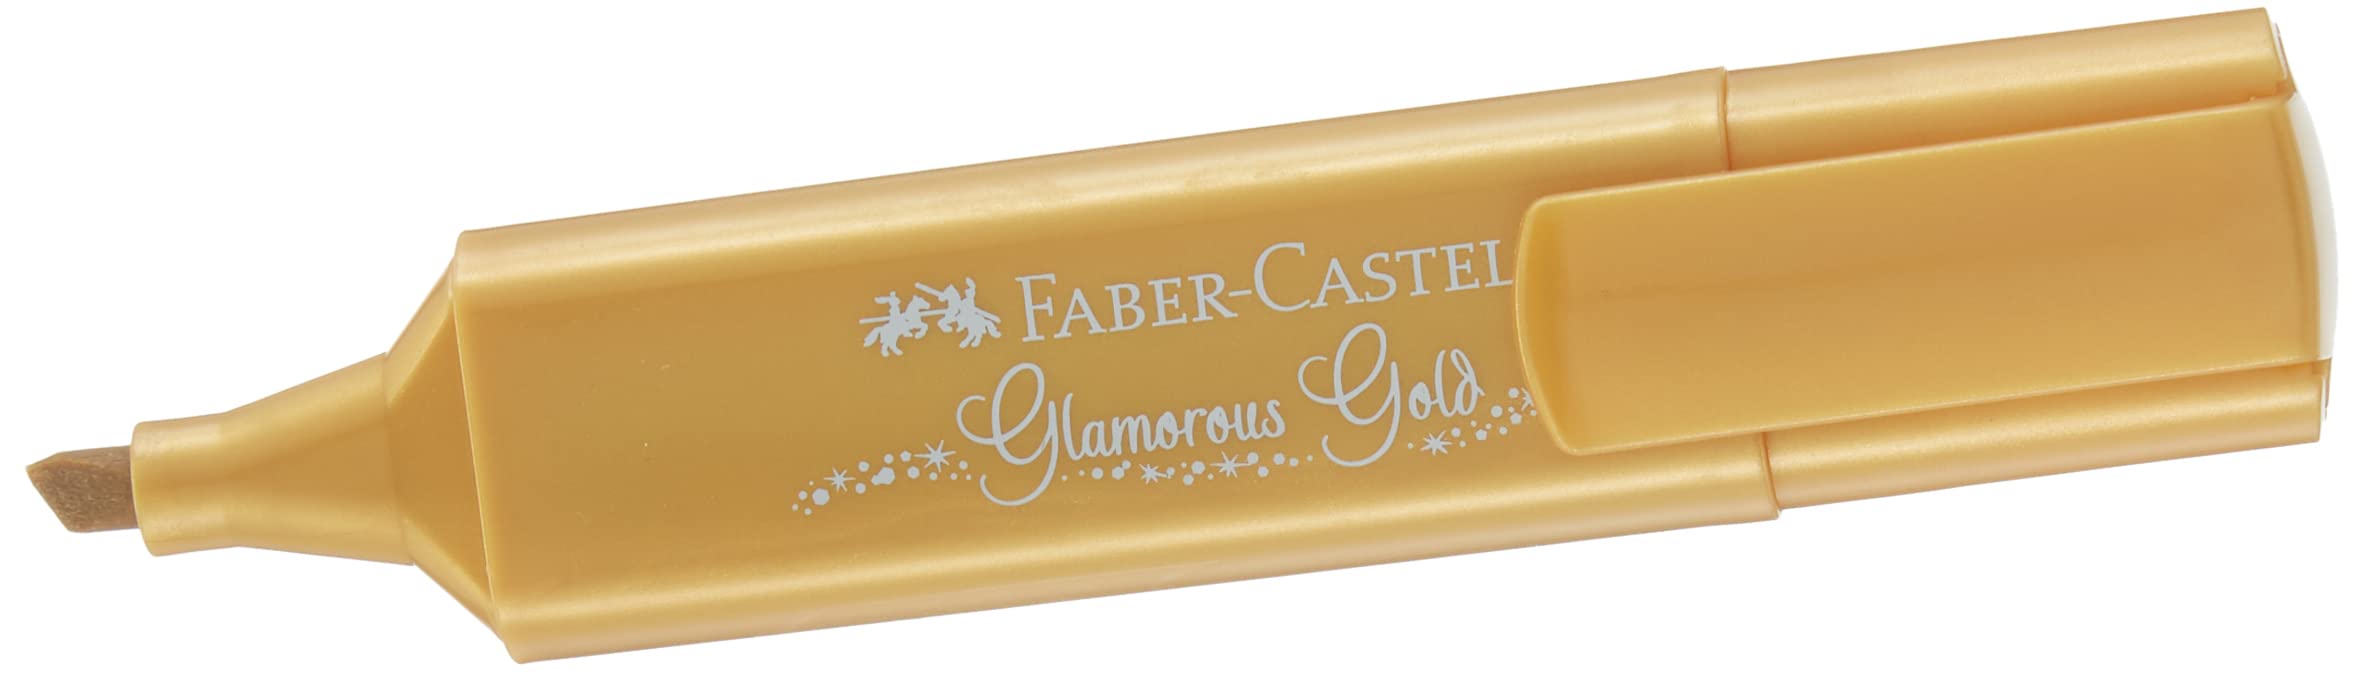 Evidenziatore Textliner 46 tratto 1-2-5 mm Faber-Castell metallic oro -